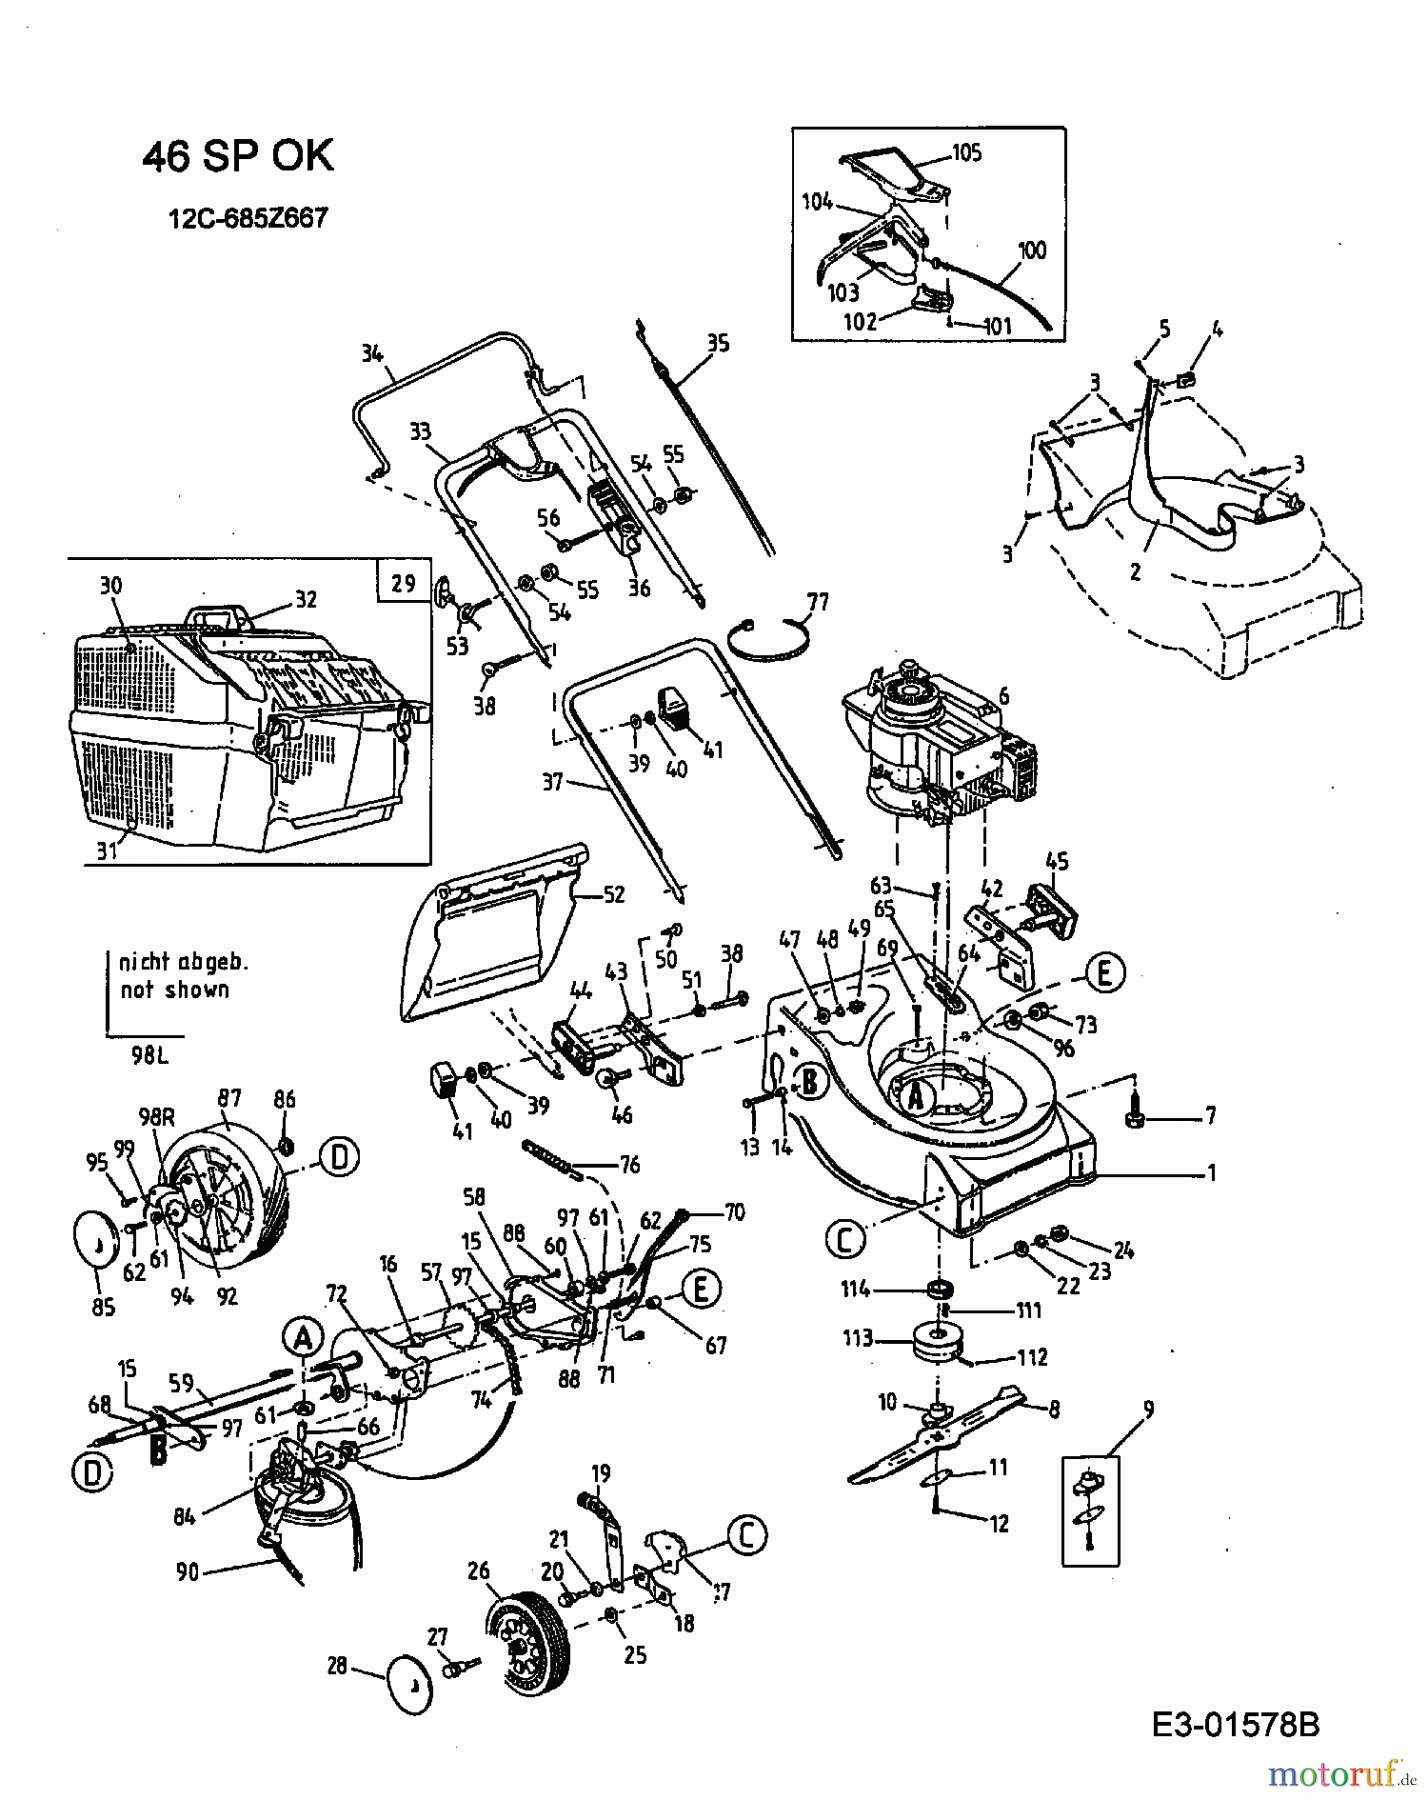  Ok Motormäher mit Antrieb 46 SP 12C-685Z667  (2003) Grundgerät